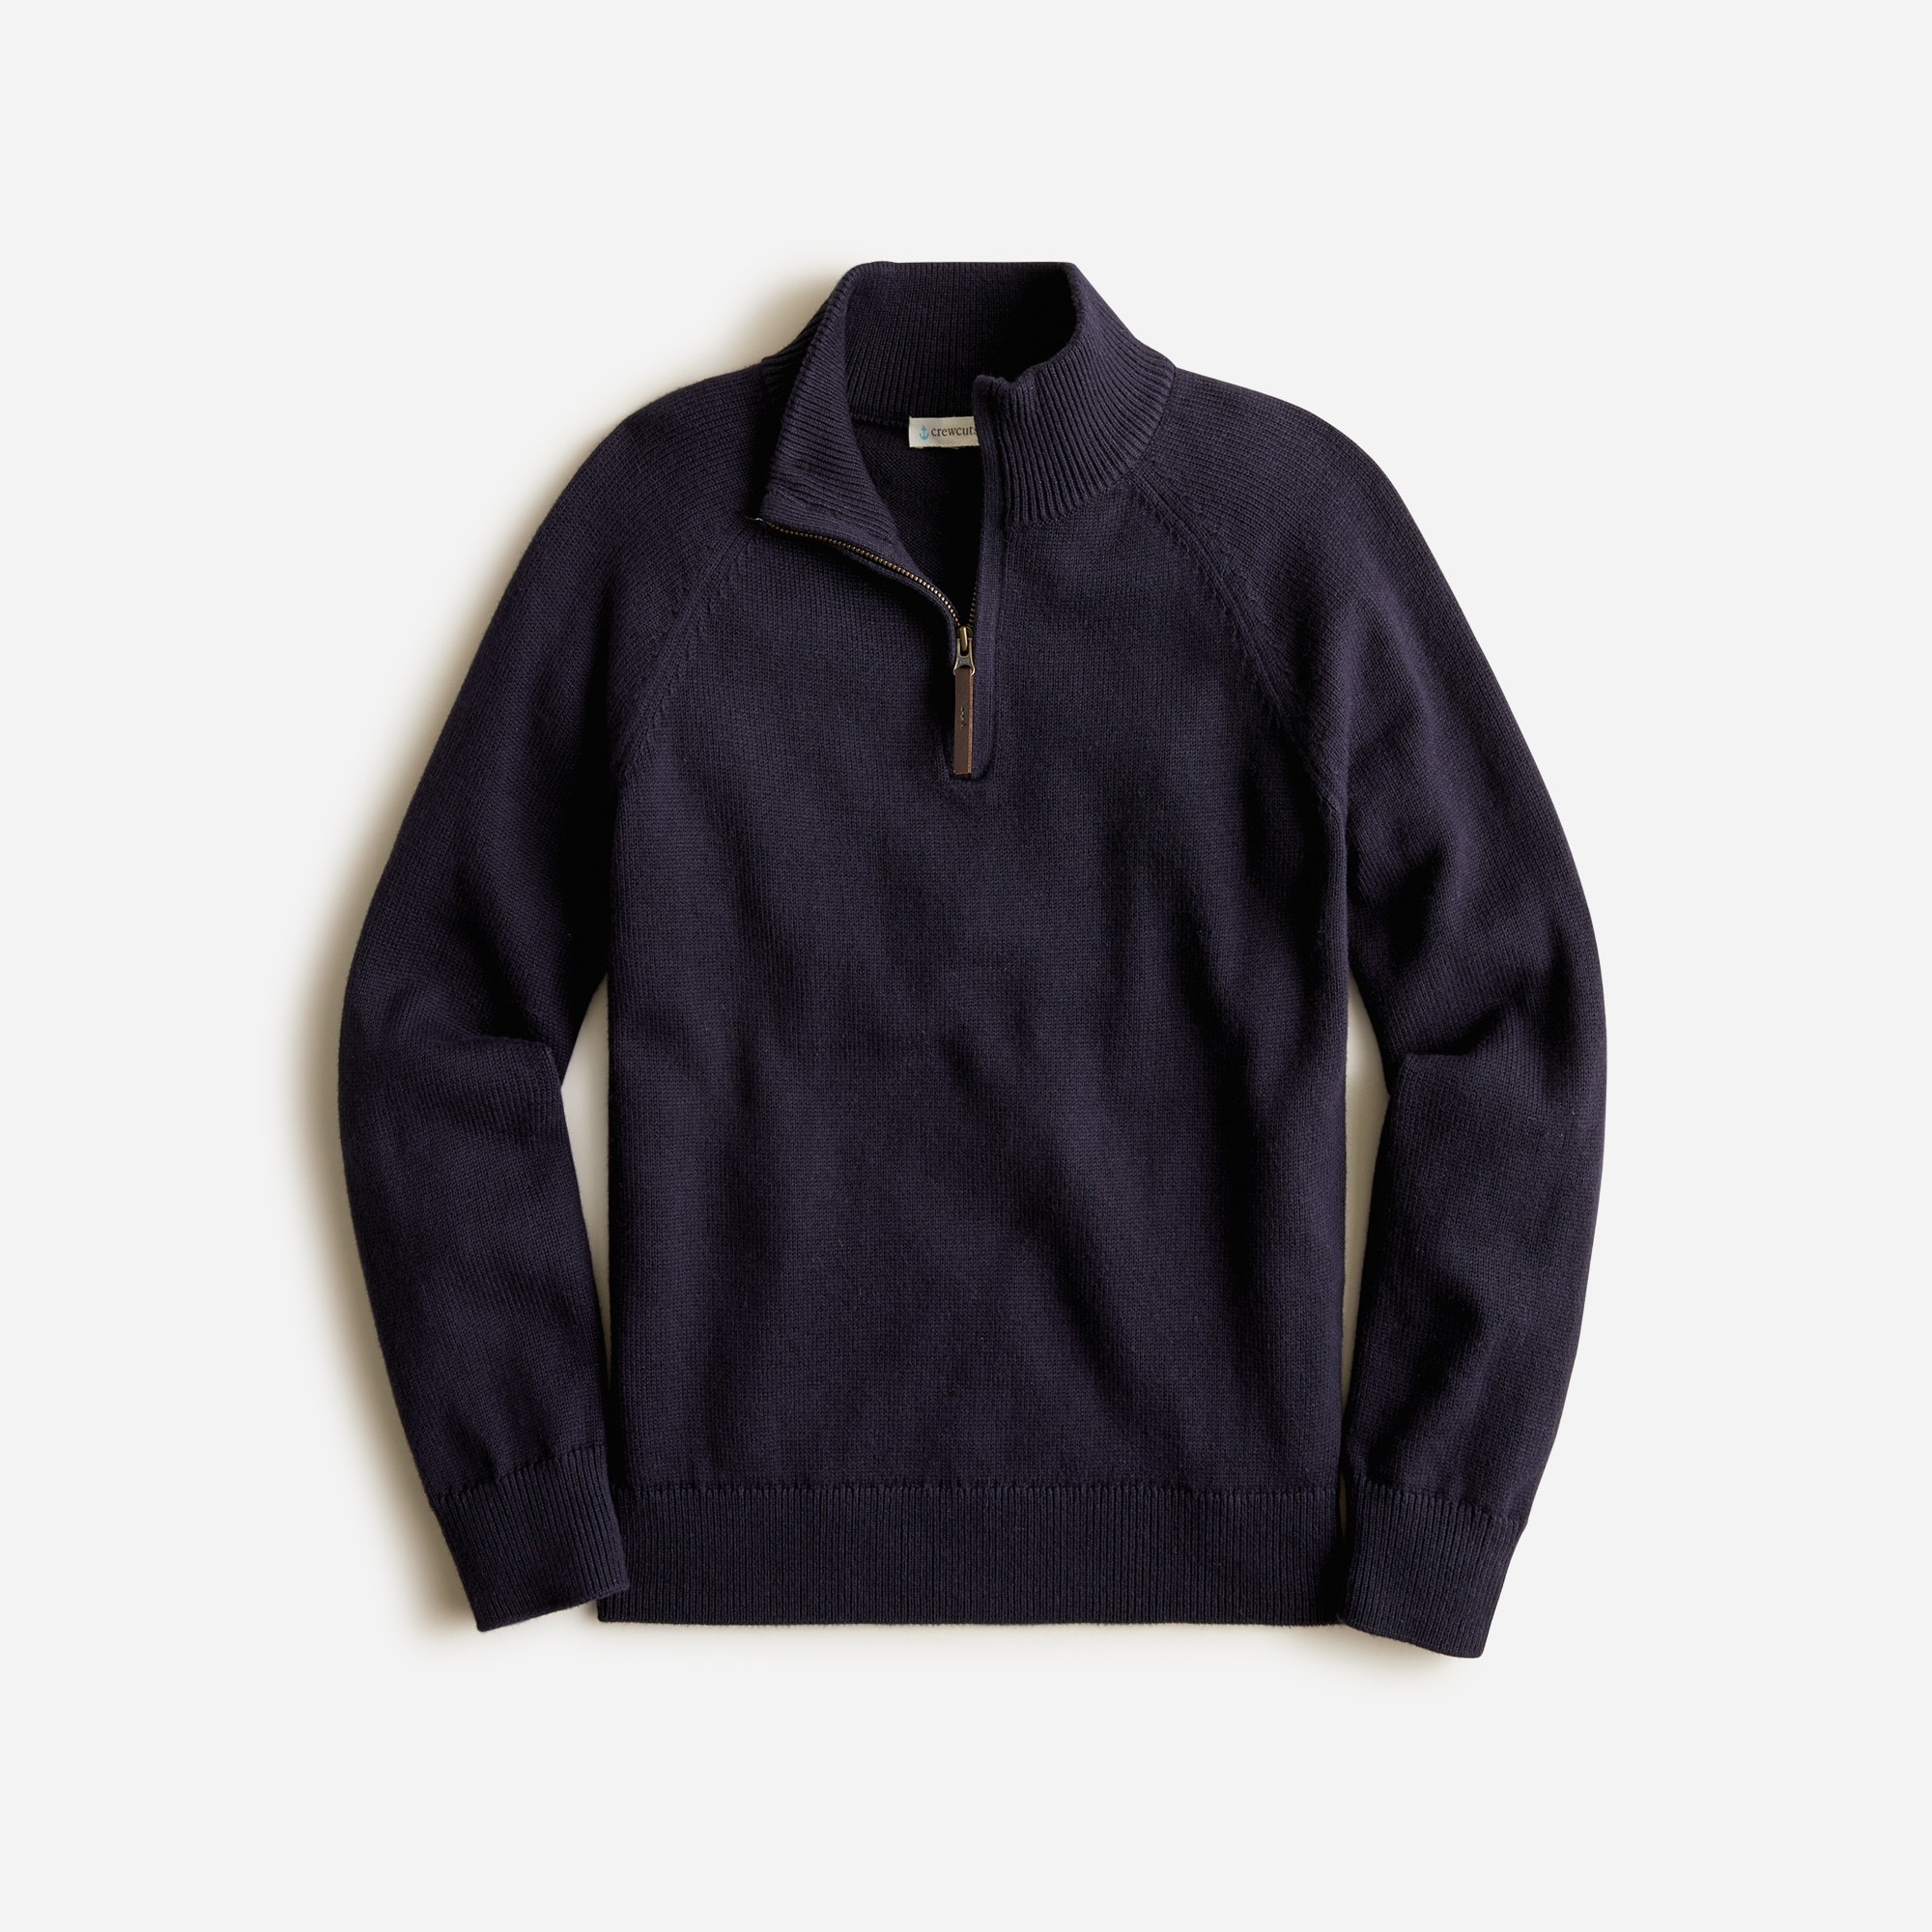 제이크루 보이즈 스웨터 J.crew Boys cotton-cashmere half-zip sweater,DARK INDIGO